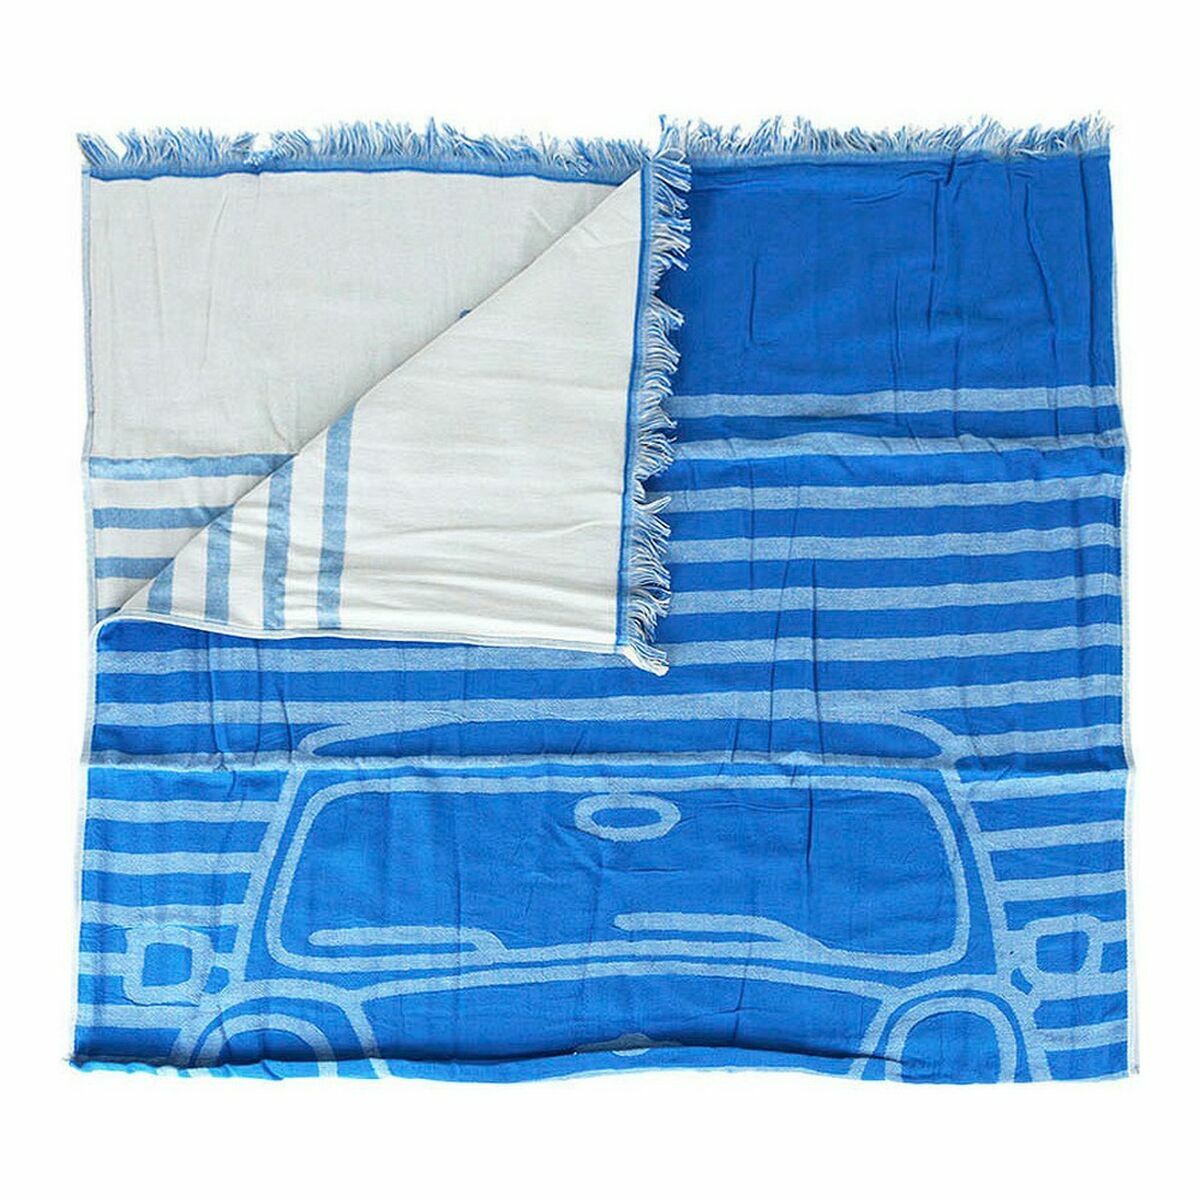 Pareo Handtuch Cllate la Boca Mini Auto Blau 90 x 170 cm Strand Tuch